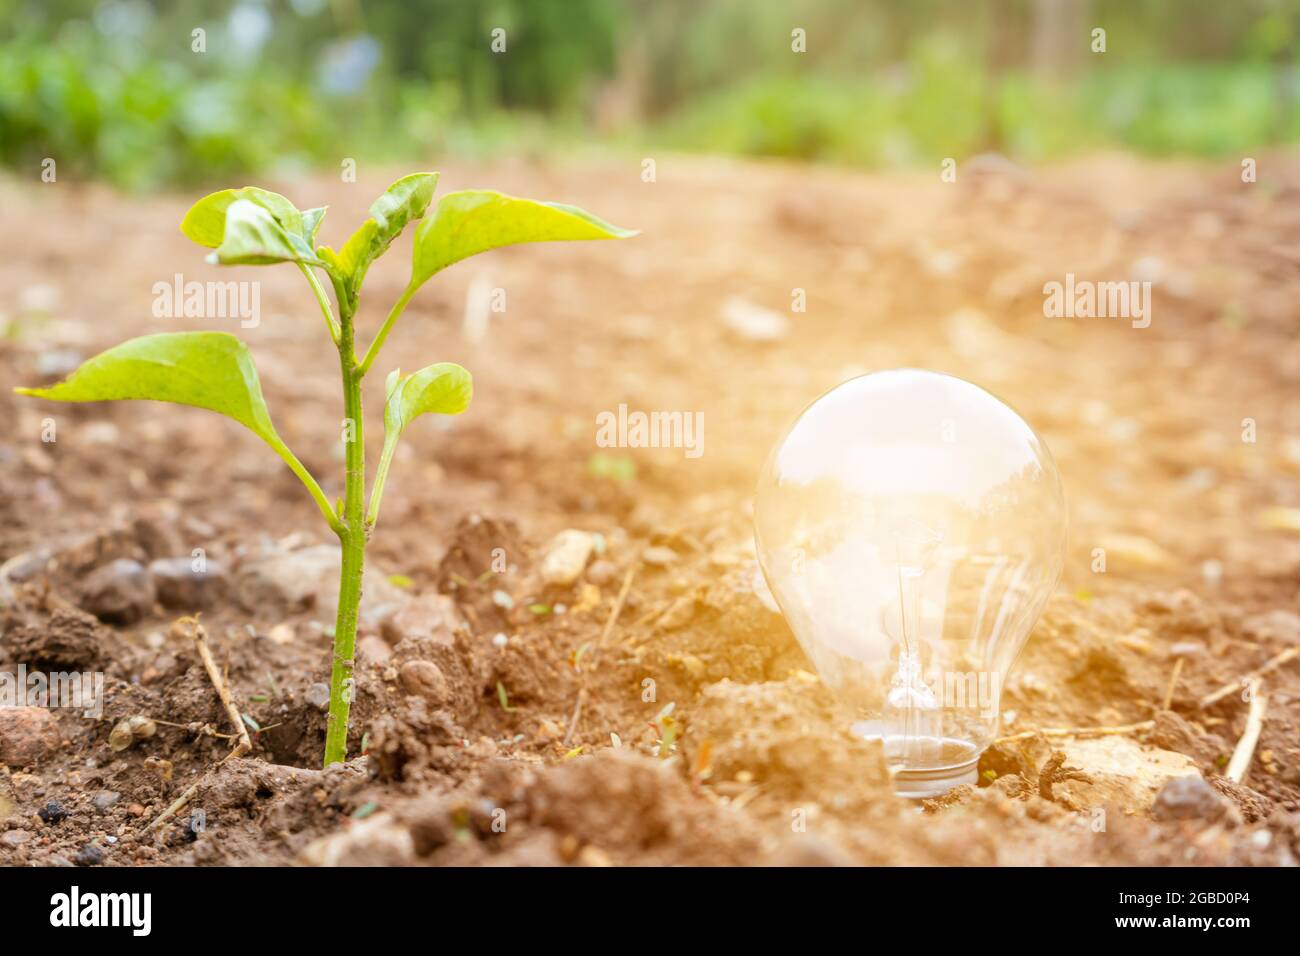 Ecologia amichevole e ambiente Concept.Light bulbo incandescente con pianta verde piccola su suolo Foto Stock